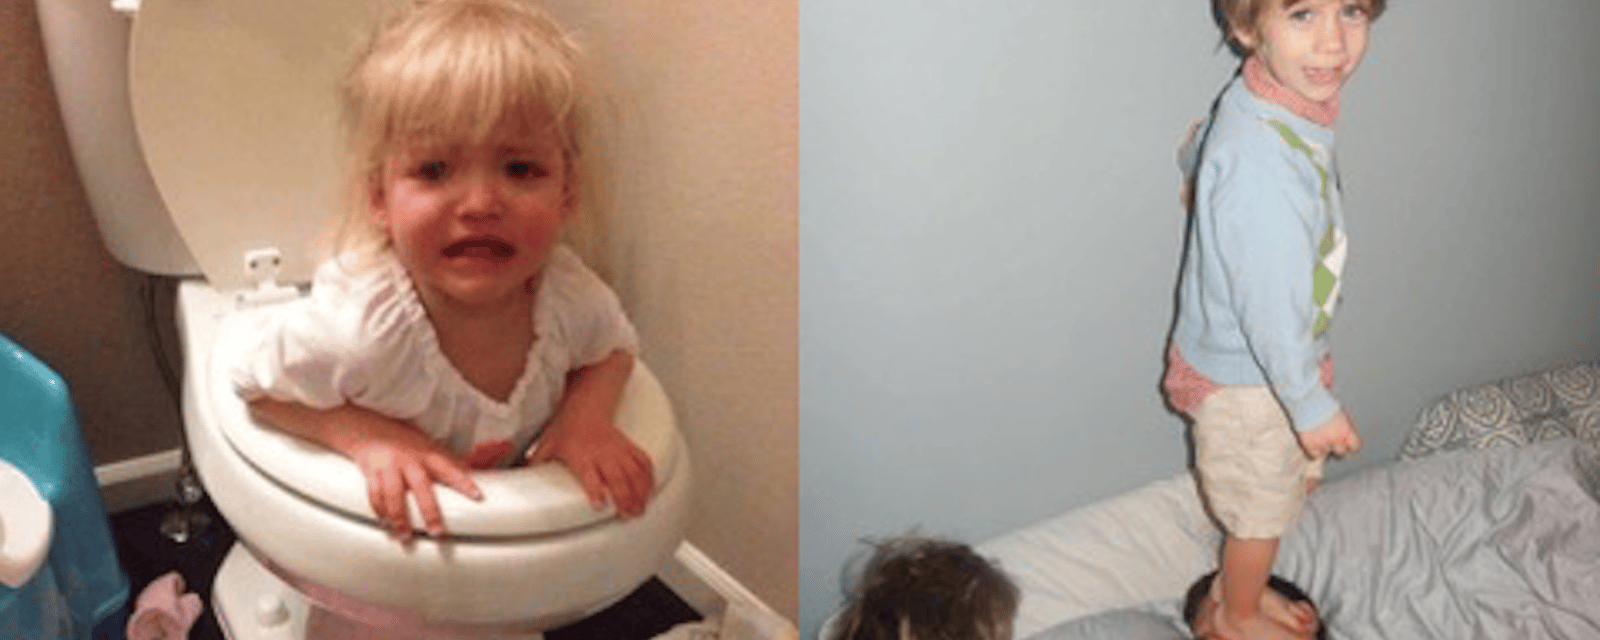 16 photos qui montrent que la vie de parent n'est pas de tout repos!